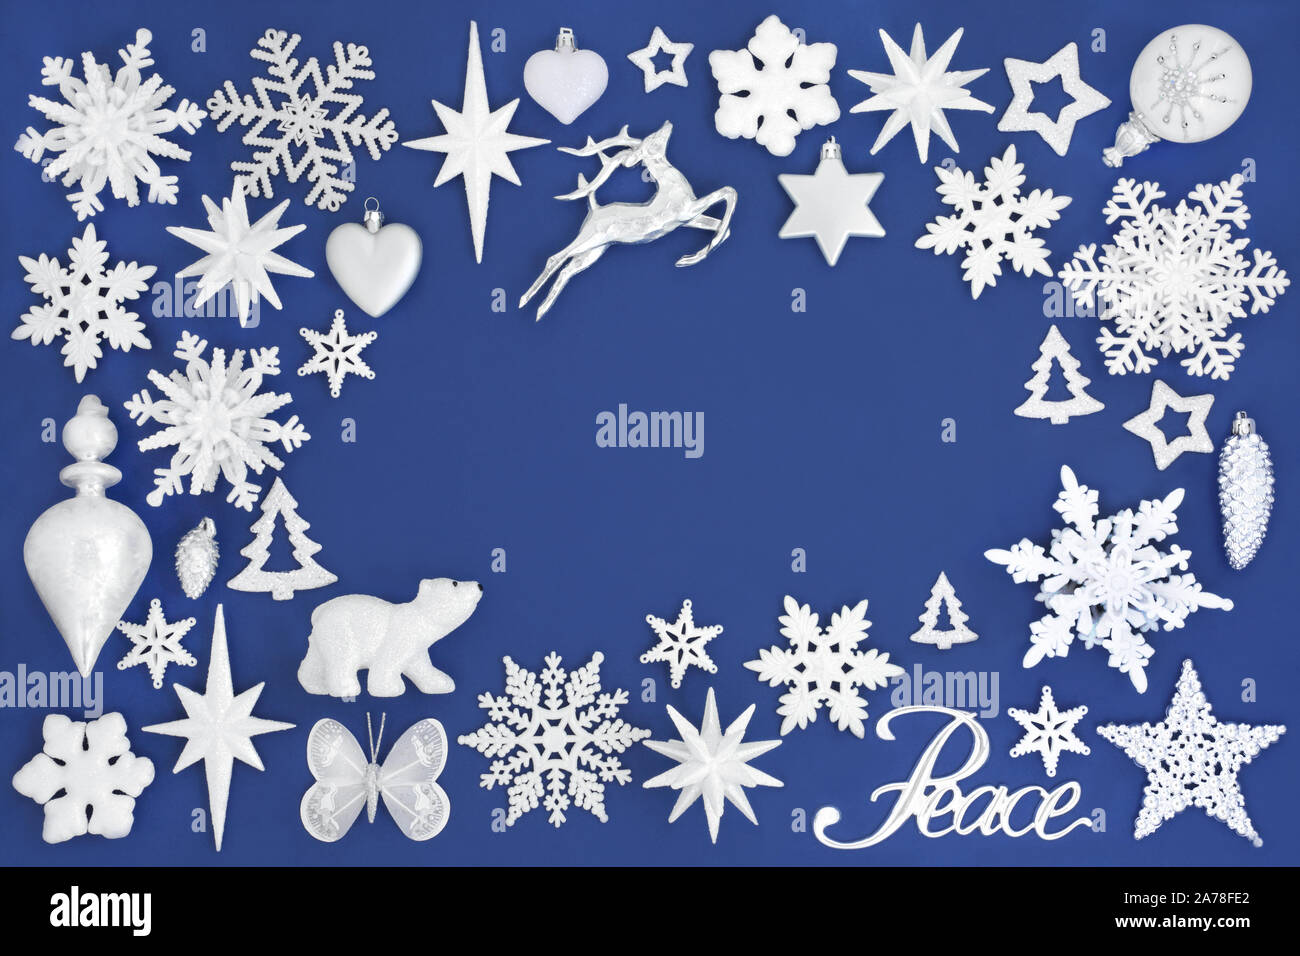 Signe de paix de Noël avec des décorations de l'arbre de Noël et formant un résumé contexte le bleu. Symboles traditionnels pour les fêtes. Banque D'Images